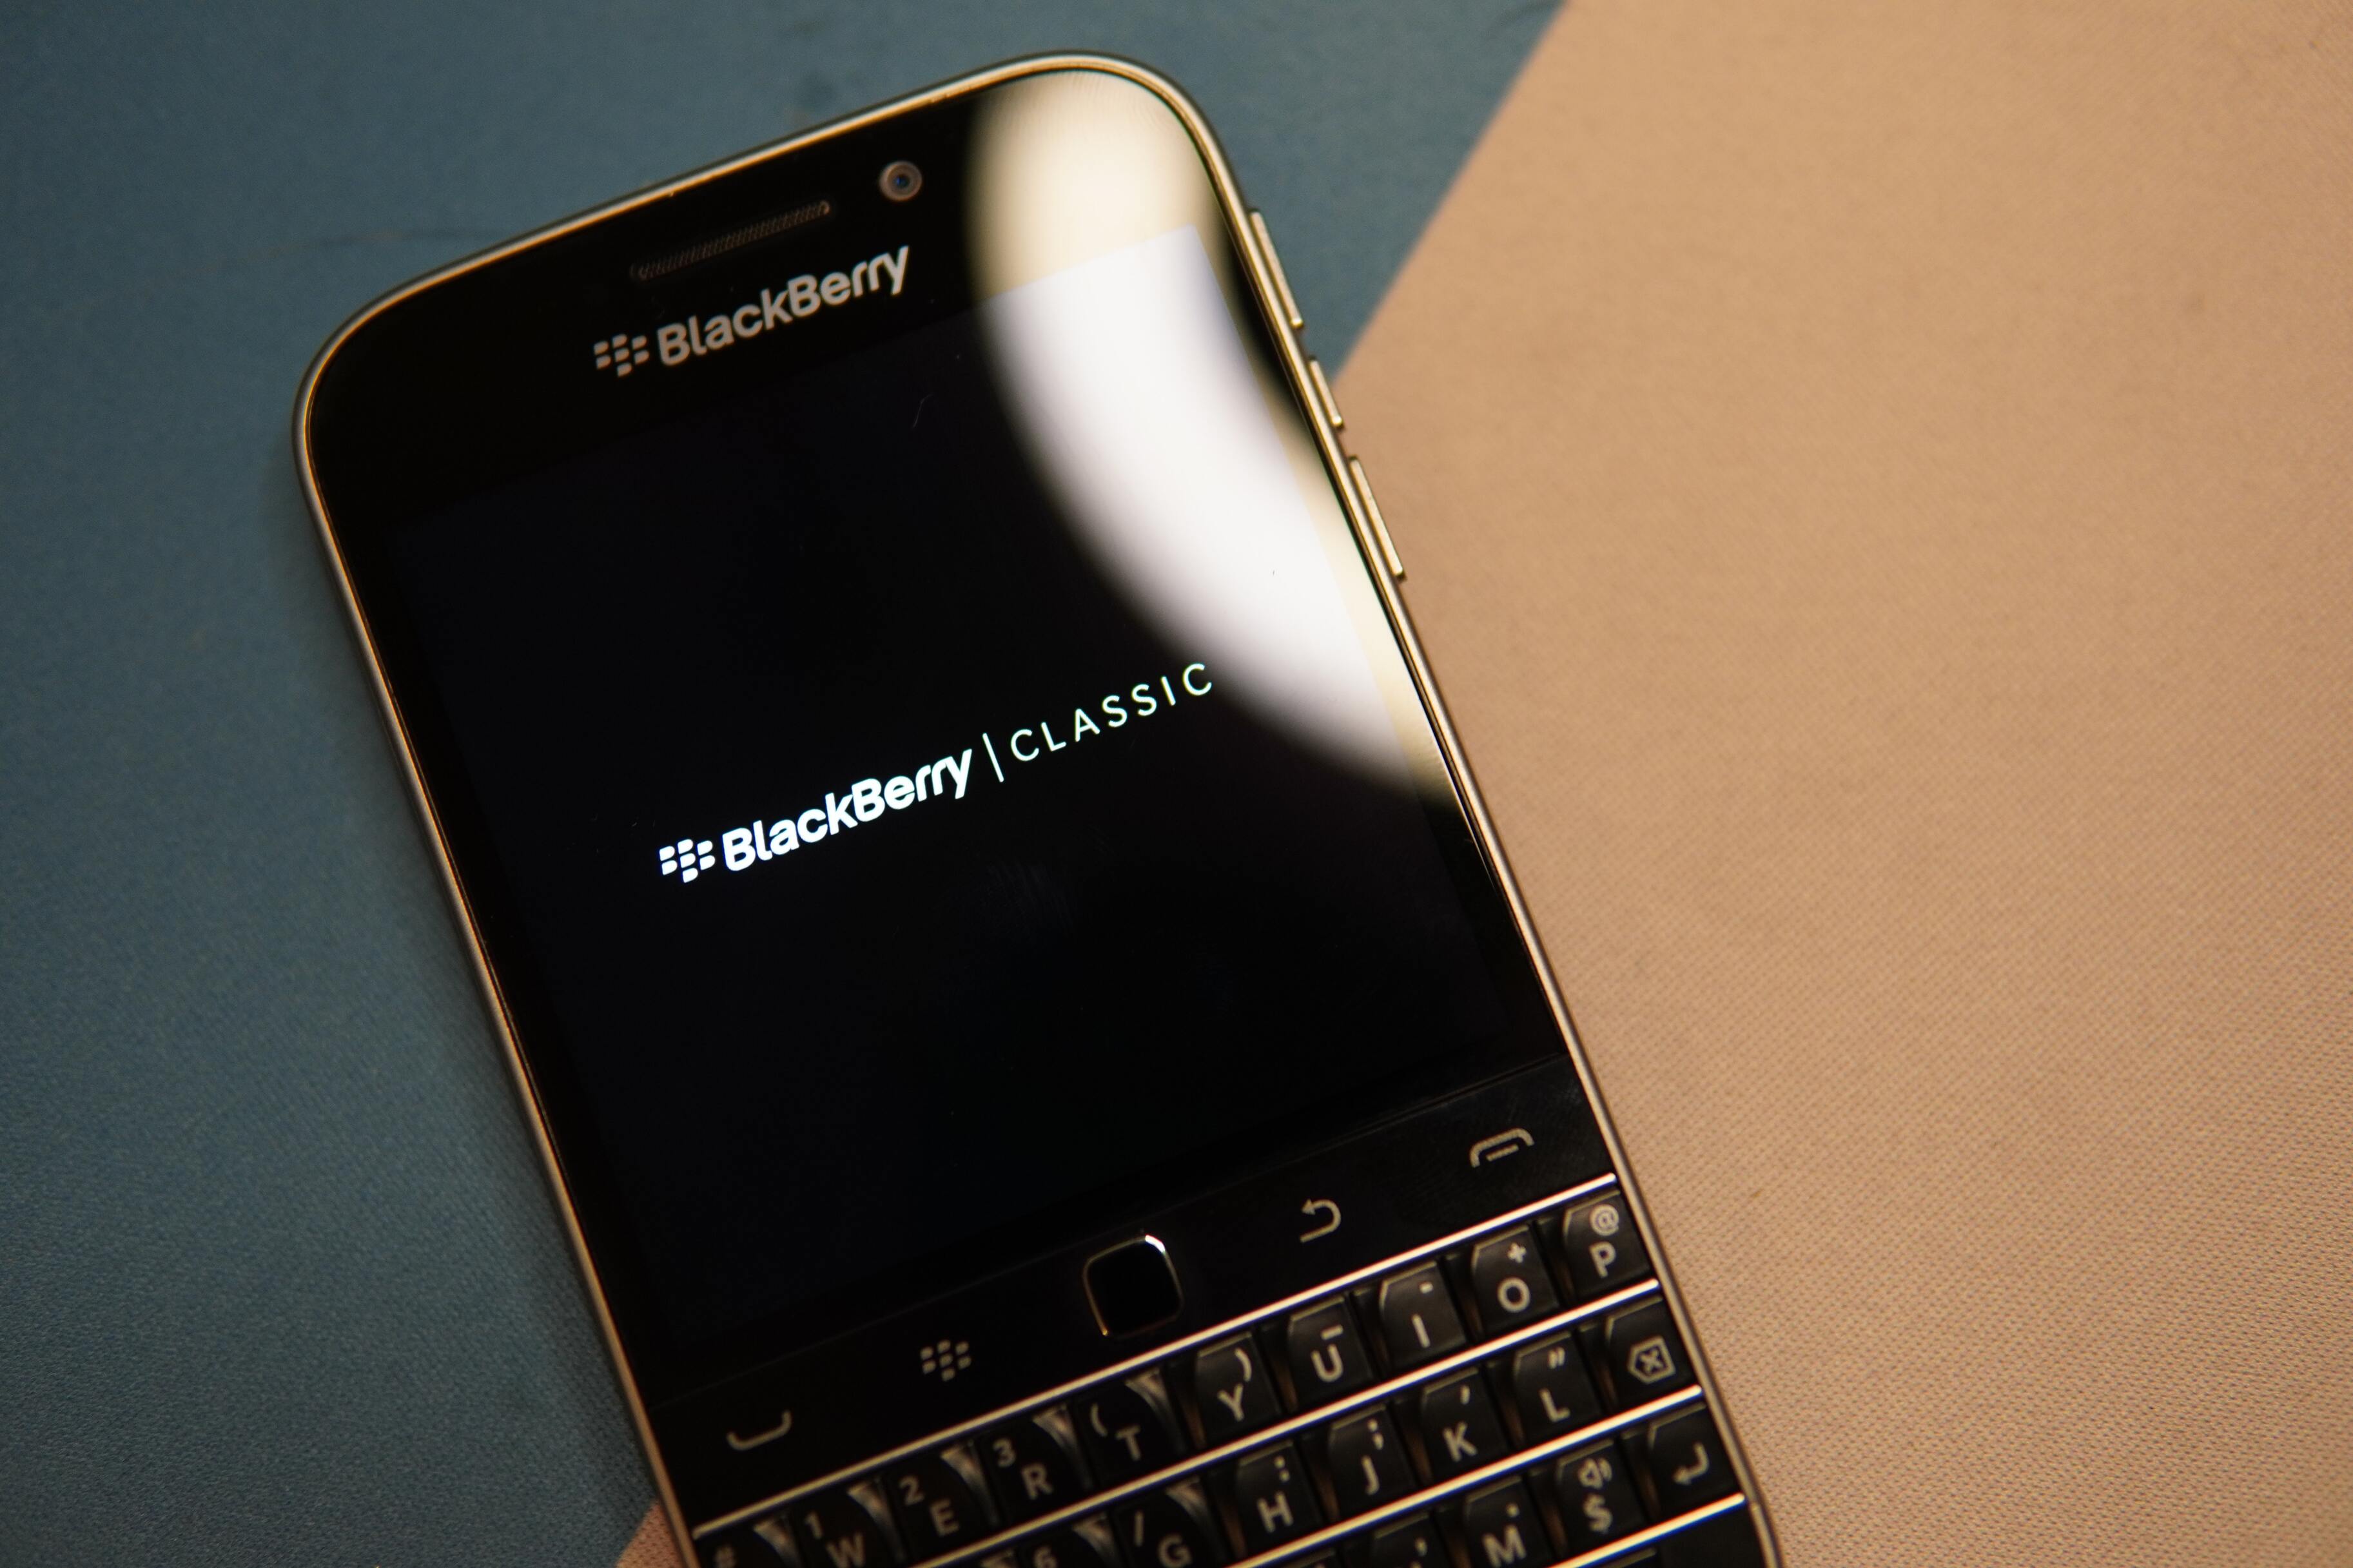  5g- blackberry    